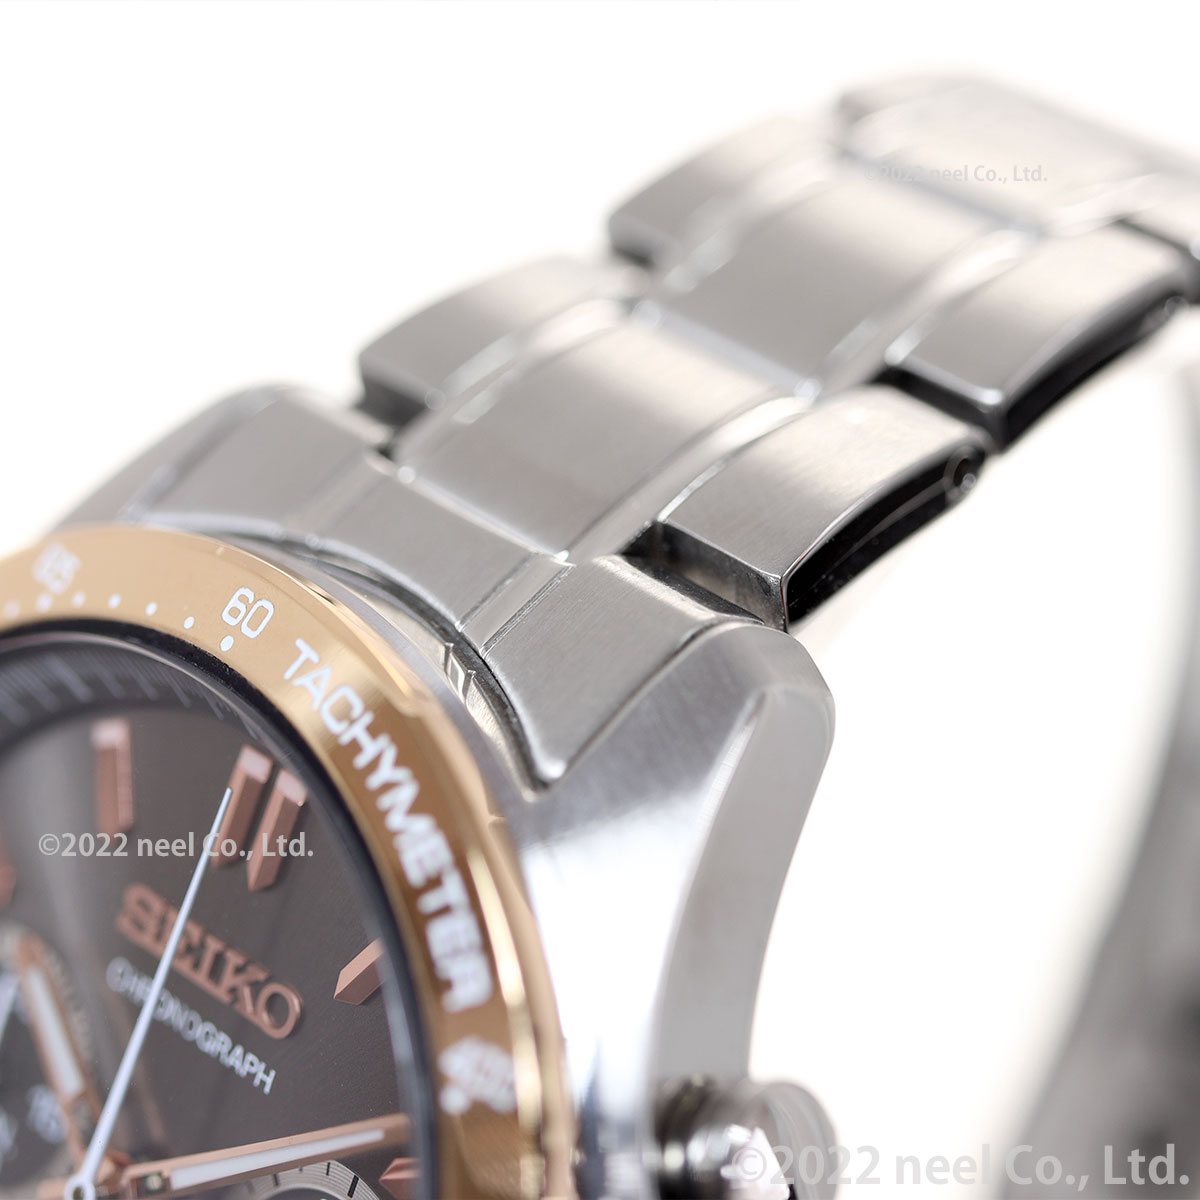 タイプ セイコー セレクション Seiko Selection 腕時計 メンズ クロノグラフ Sbtr026 Neel Paypayモール店 通販 Paypayモール スタイリッ Shineray Com Br